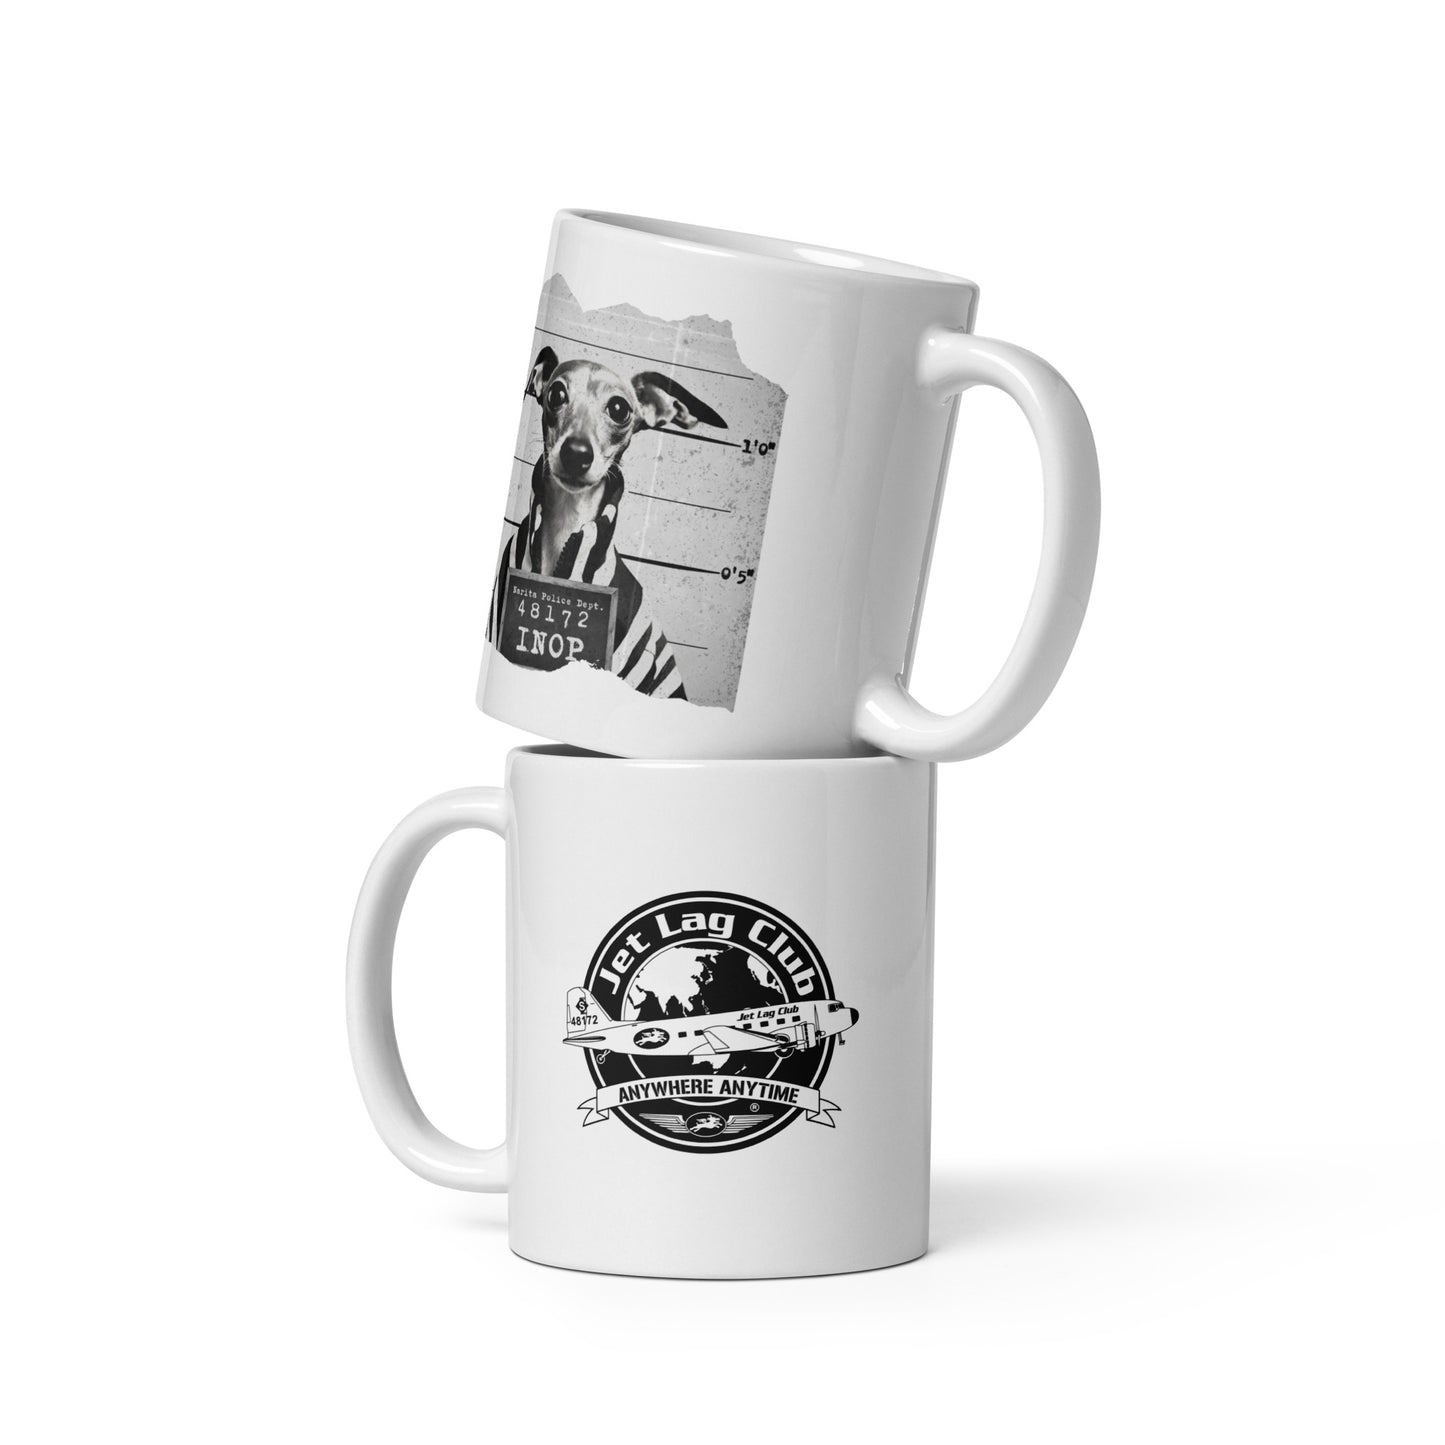 Jet Lag Club®  Inop Mugshot White Ceramic Mug